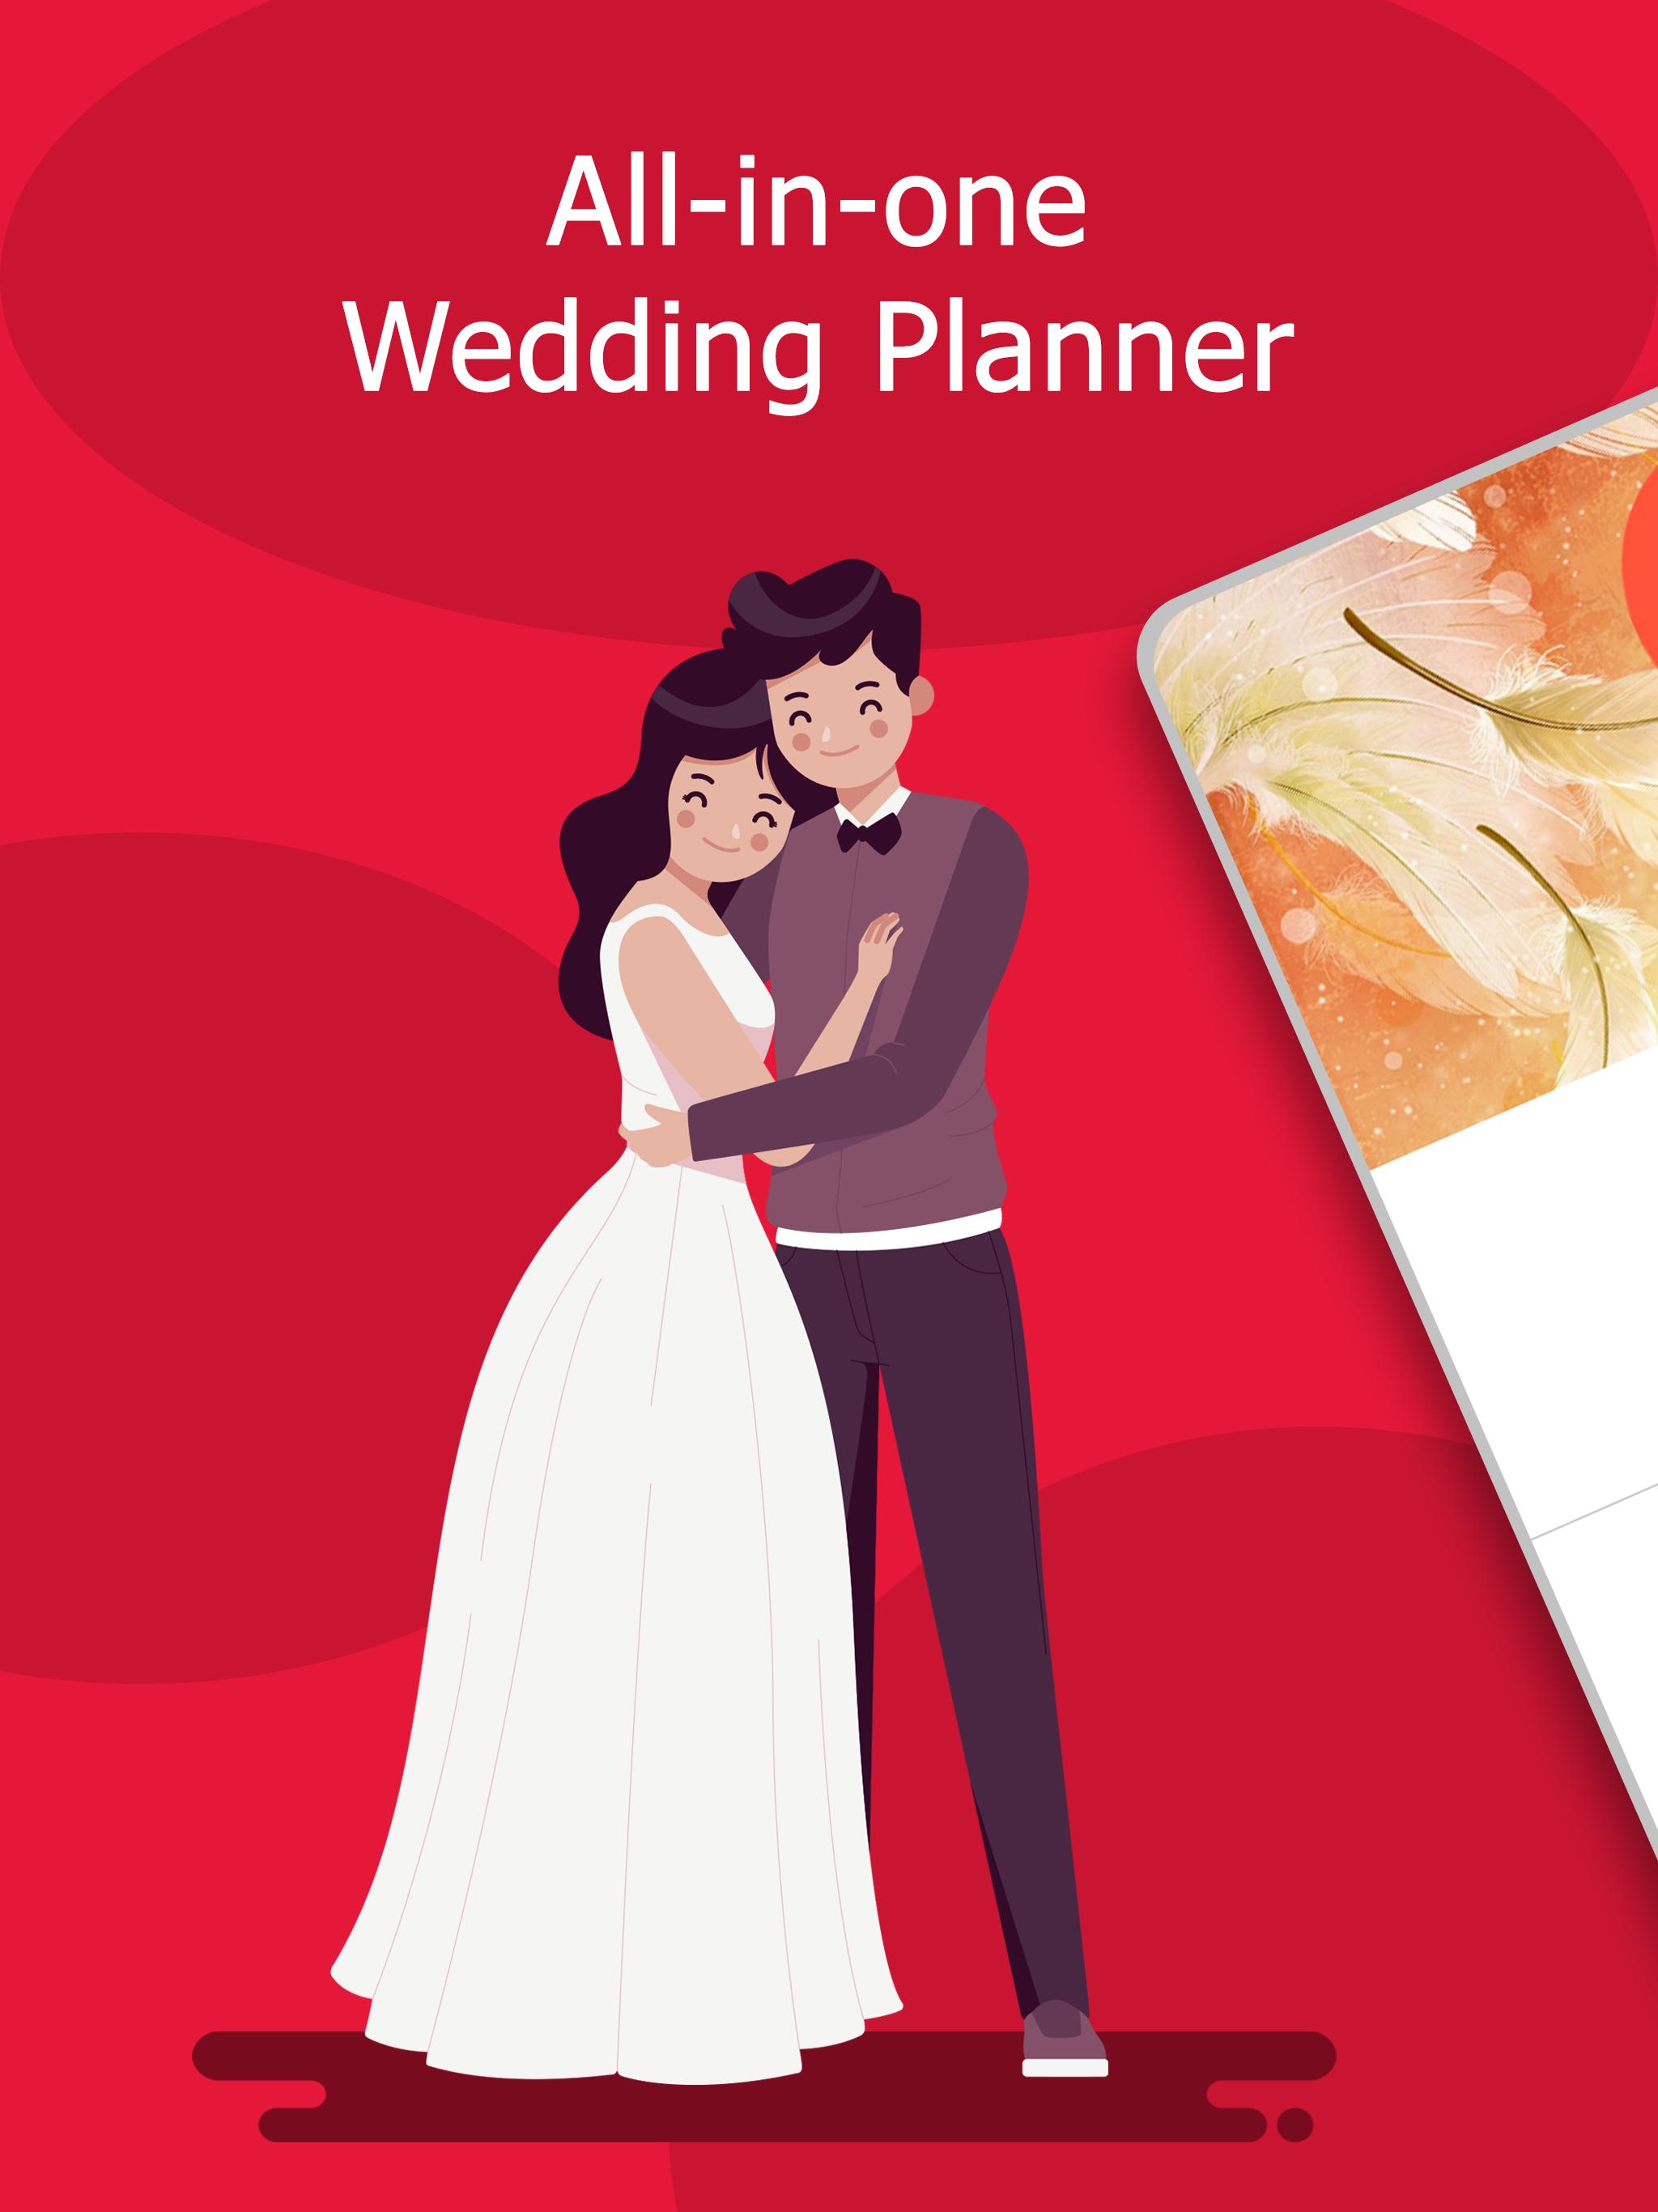 Wedding Planner: Checklist, Budget, Countdown 2.04.227 Screenshot 8